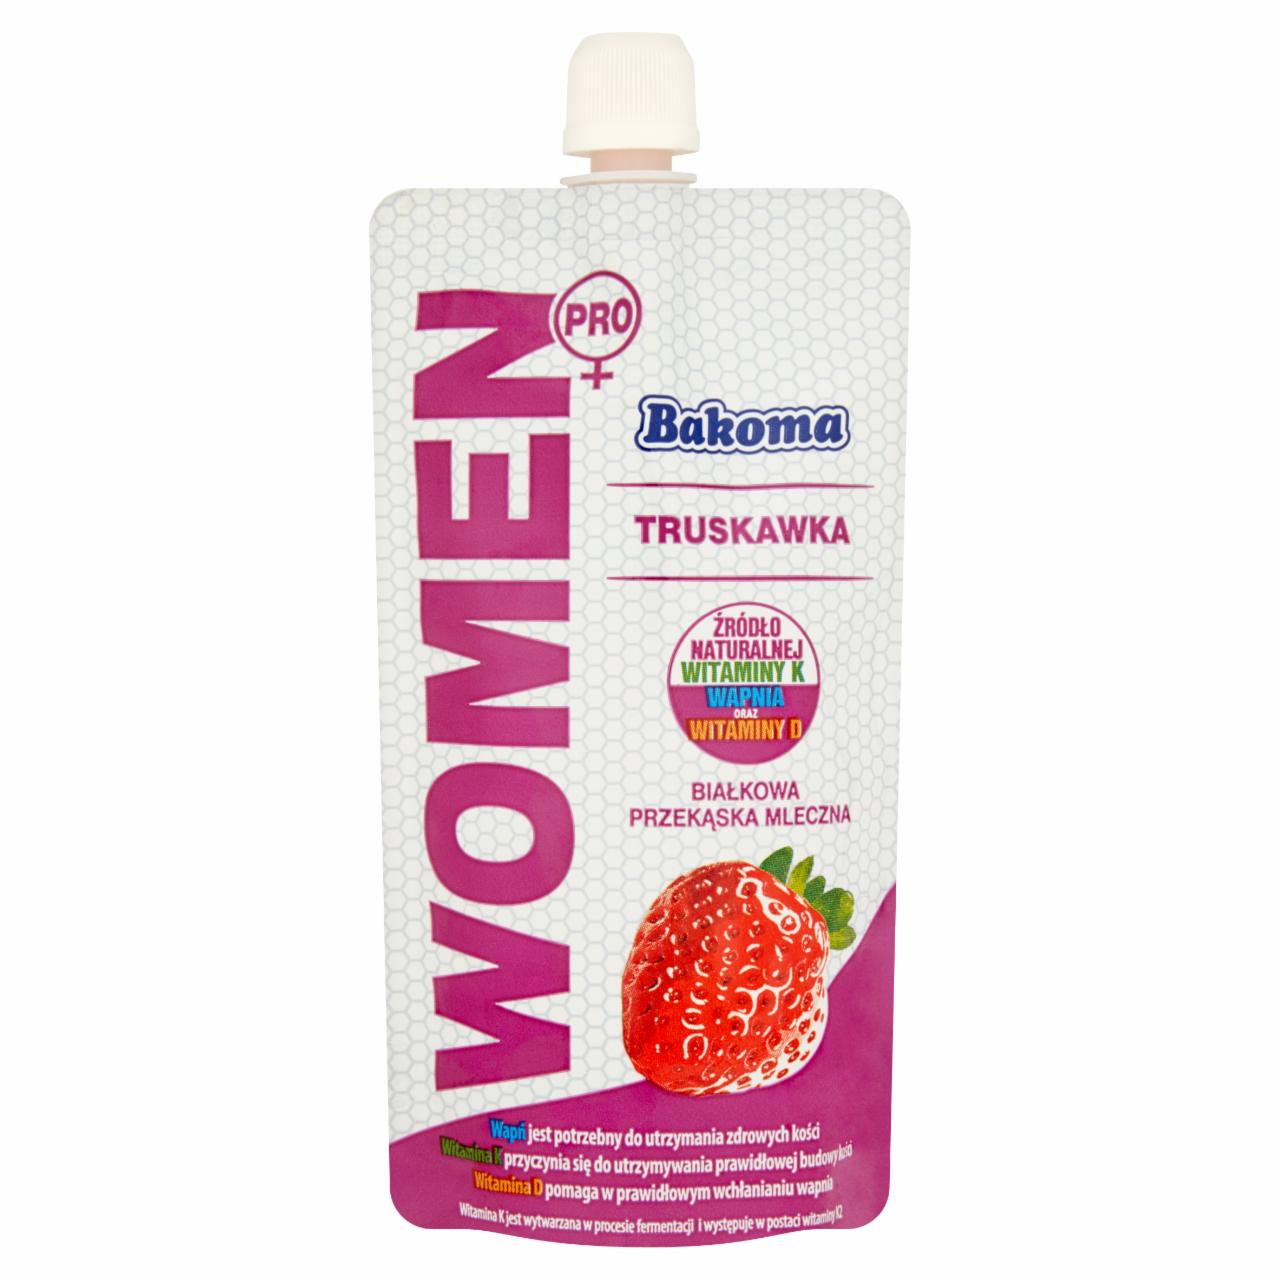 Zdjęcia - Bakoma Women Pro Białkowa przekąska mleczna truskawka 120 g